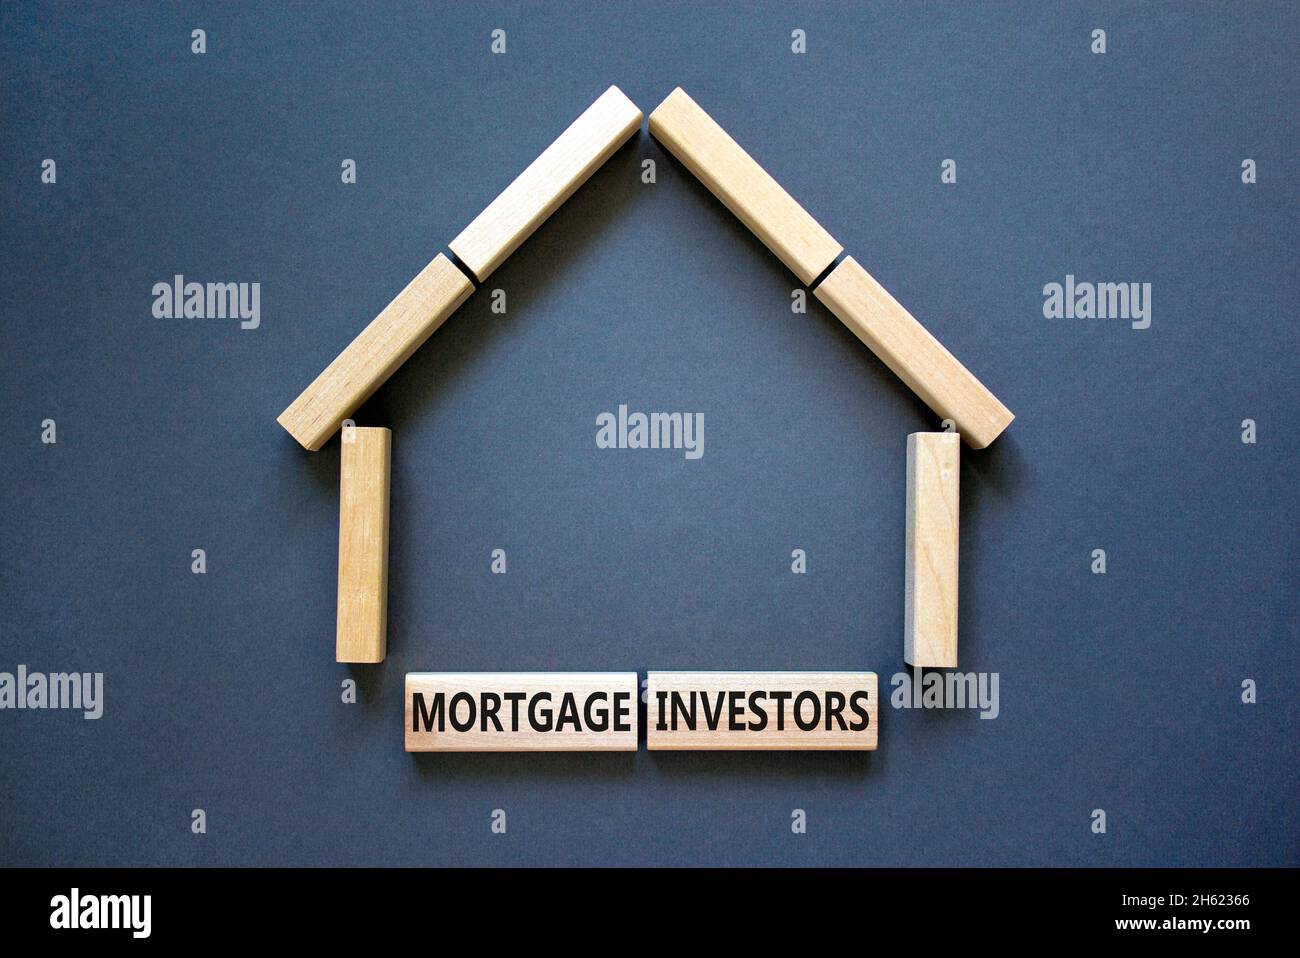 Symbole des investisseurs hypothécaires.Mots-clés 'Mortgage Investors' sur des blocs de bois près de la maison en bois miniature.Magnifique fond gris.Affaires, morg Banque D'Images